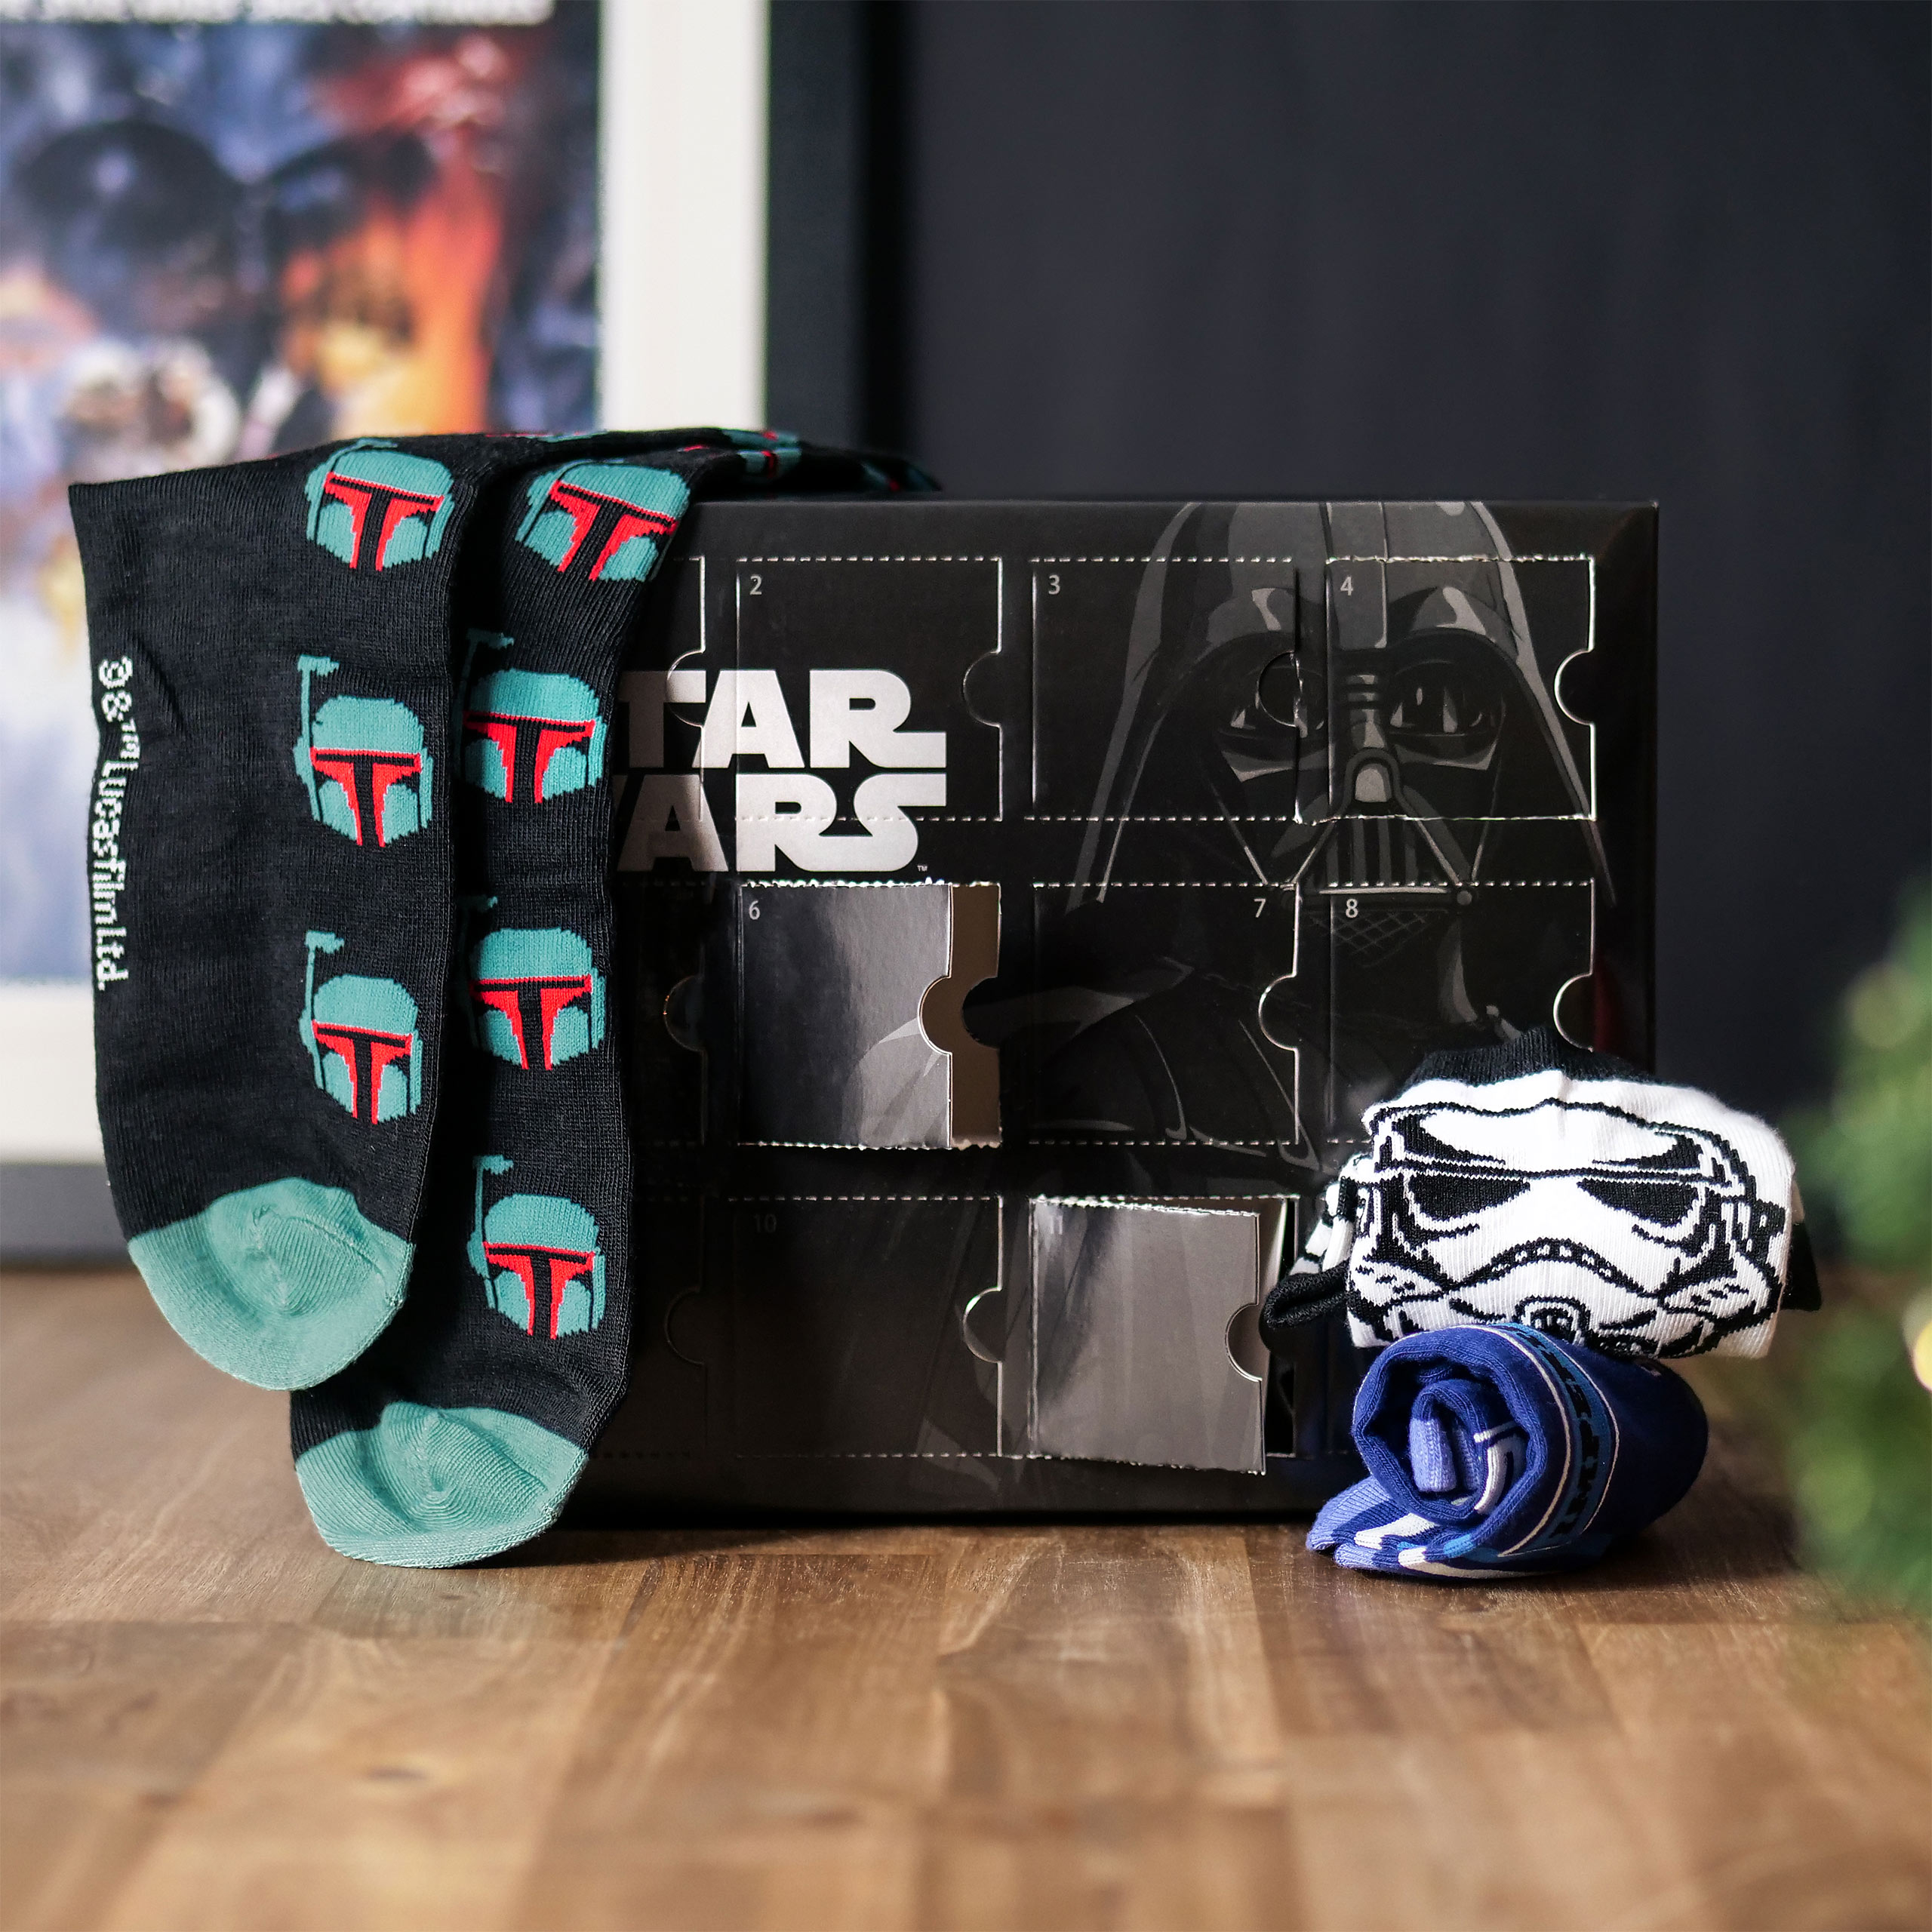 Star Wars - Darth Vader Socken Adventskalender